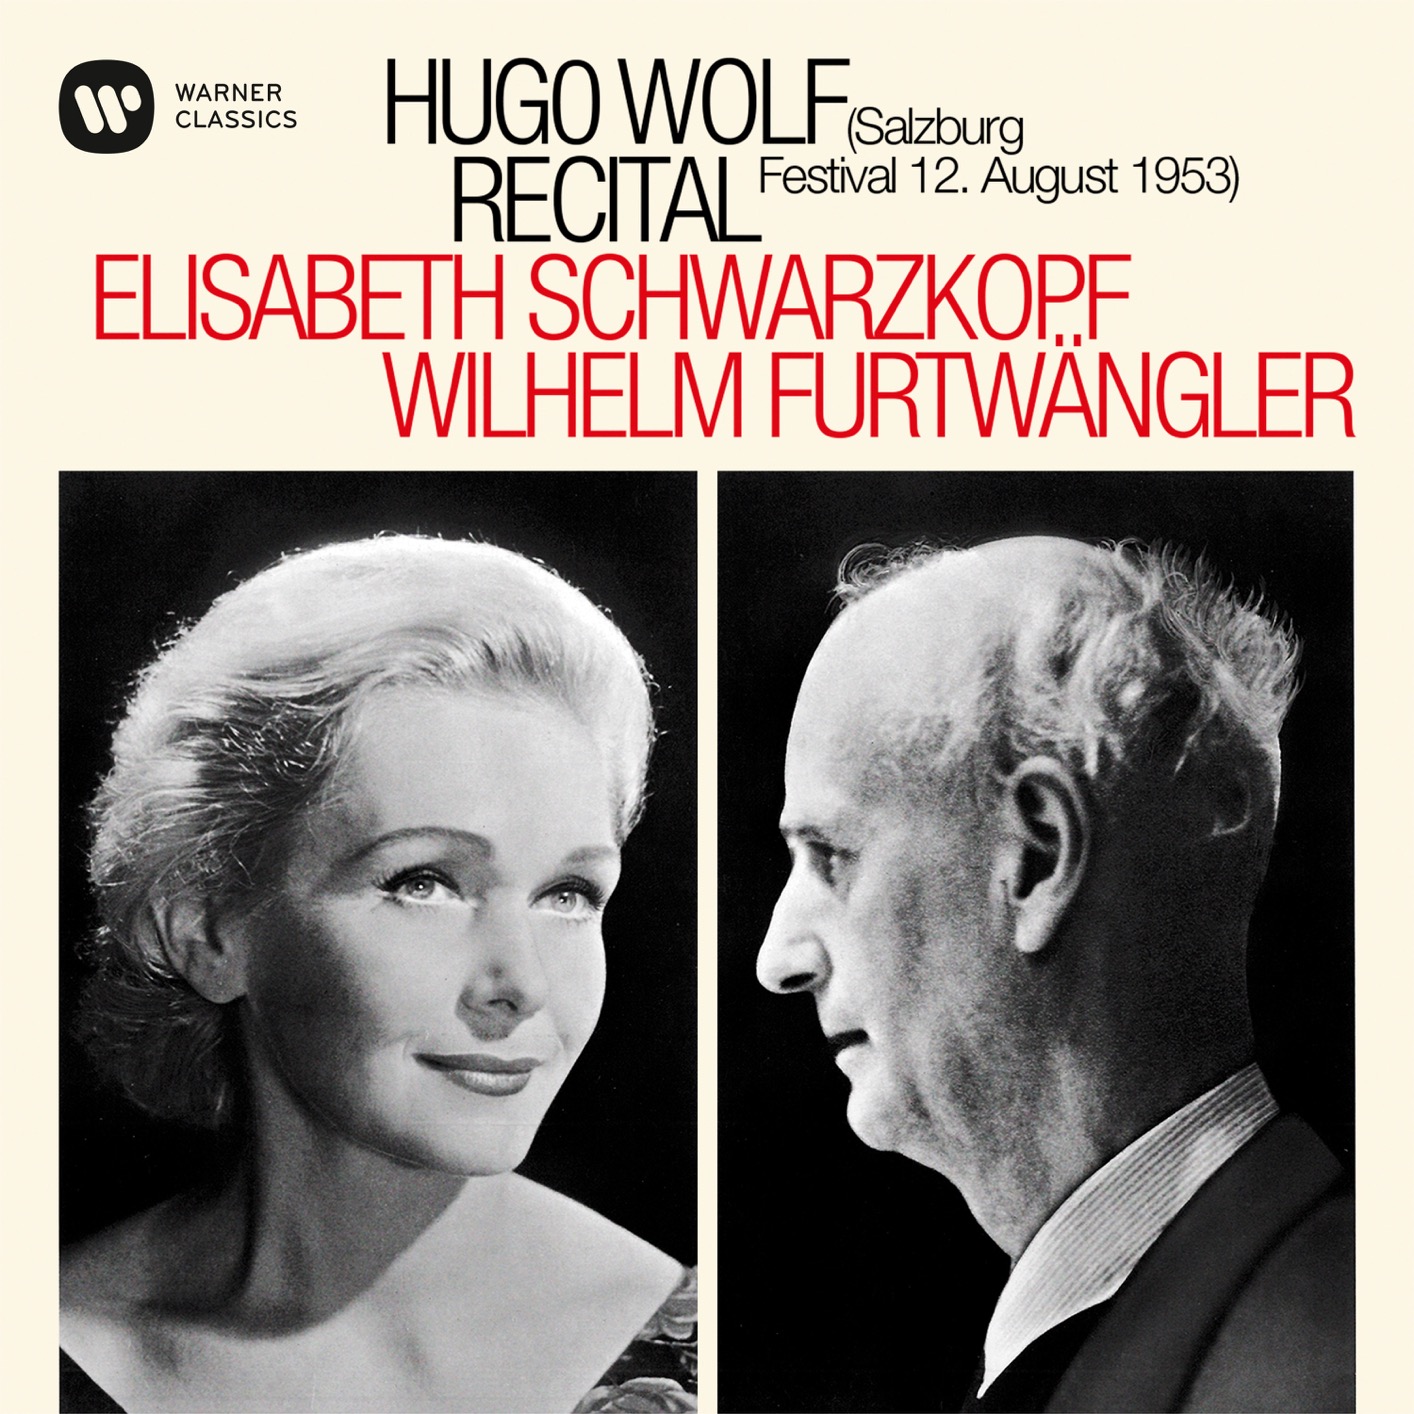 Elisabeth Schwarzkopf & Wilhelm Furtwangler – Hugo Wolf Recital – Salzburg, 12/08/1953 (Mono Remastered) (1969/2019) [FLAC 24bit/96kHz]